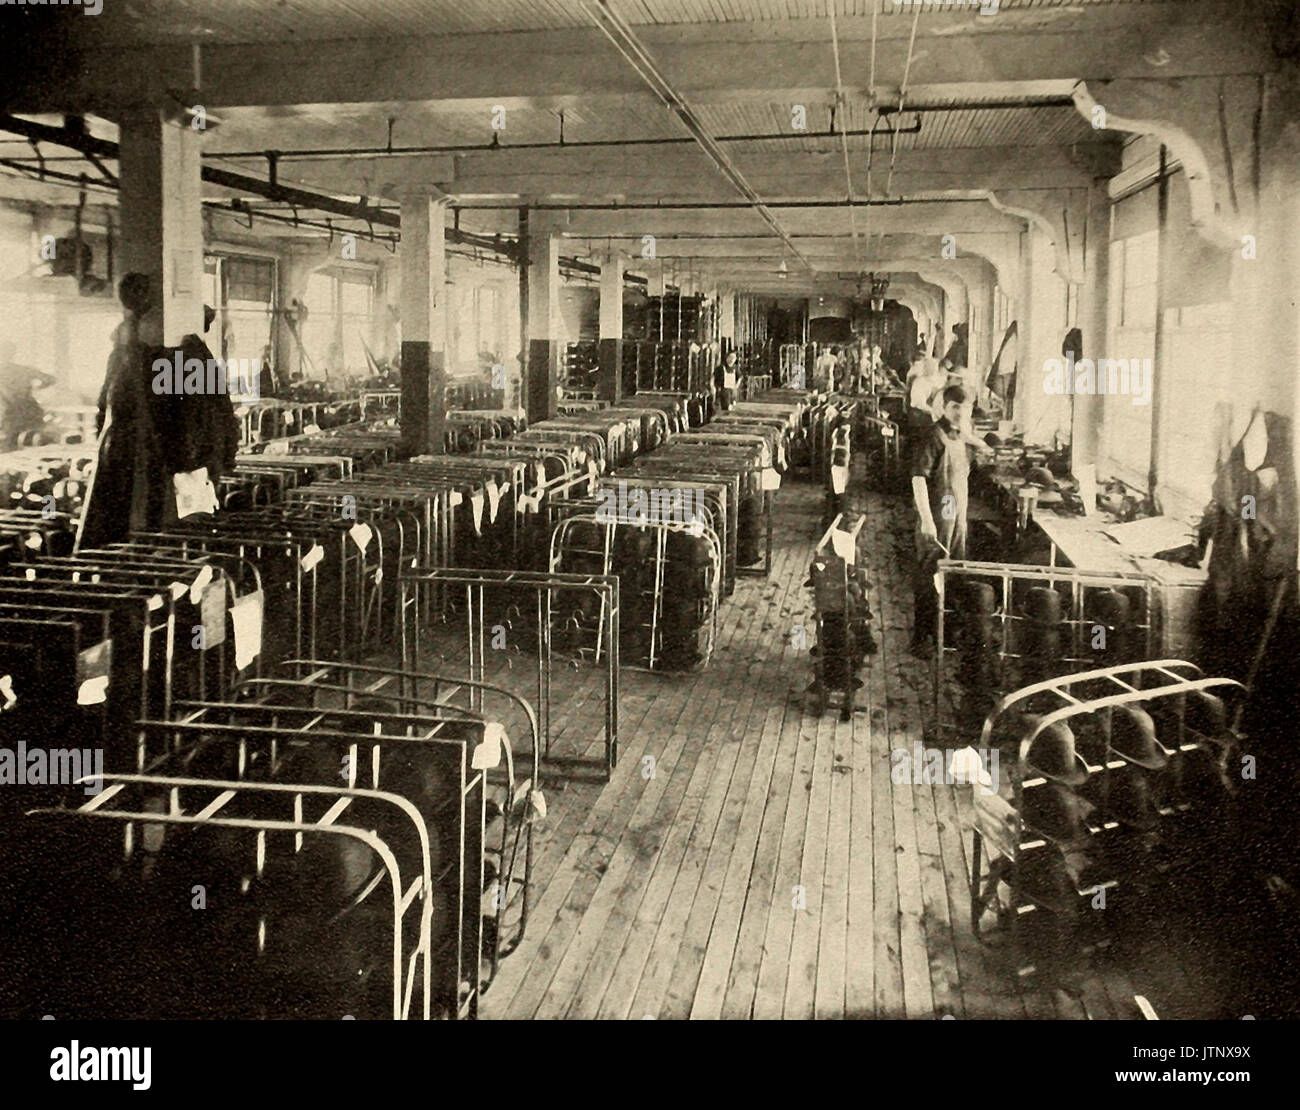 Otra parte de la sala de acabado sombrero tieso, fábrica de sombreros, circa 1900 Foto de stock